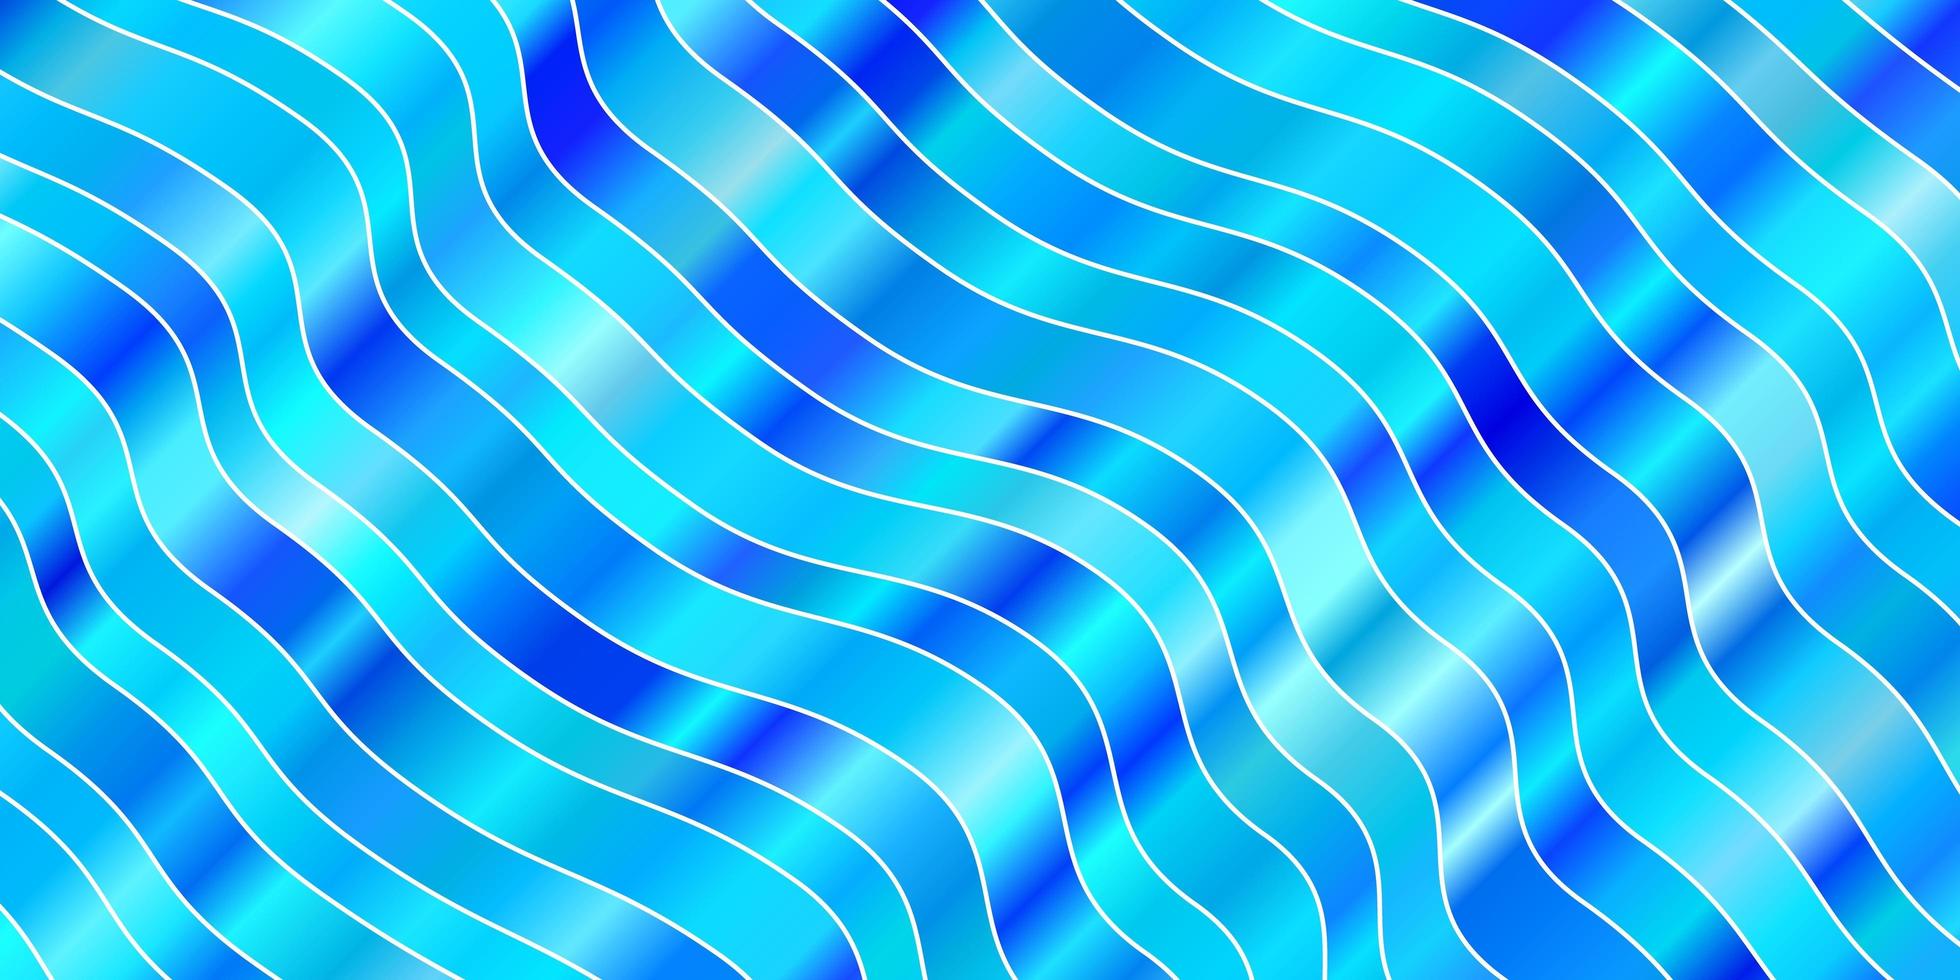 diseño de vector azul claro con líneas torcidas.